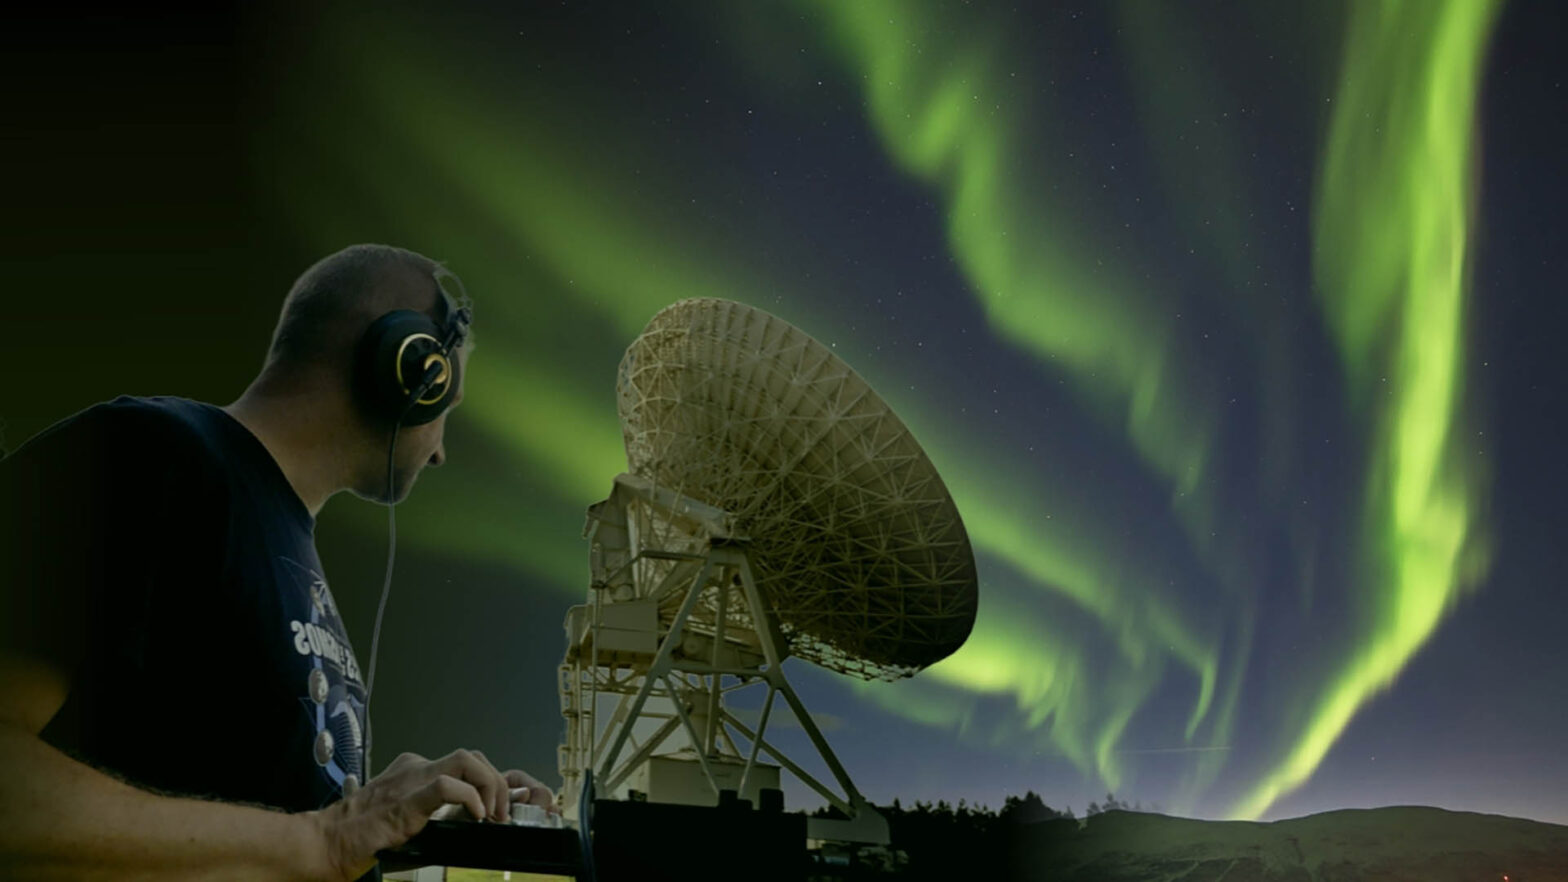 Fotomontaż. W tle zorza polarna w odcieniach zieleni na nocnym niebie. Na środku antena satelitarna teleskopu radiowego skierowana w prawo, za nią - tej samej wielkości mężczyzna od pasa w górę, ze słuchawkami na uszach i dłońmi na konsoli cyfrowej DJ, patrzący na tą antenę.